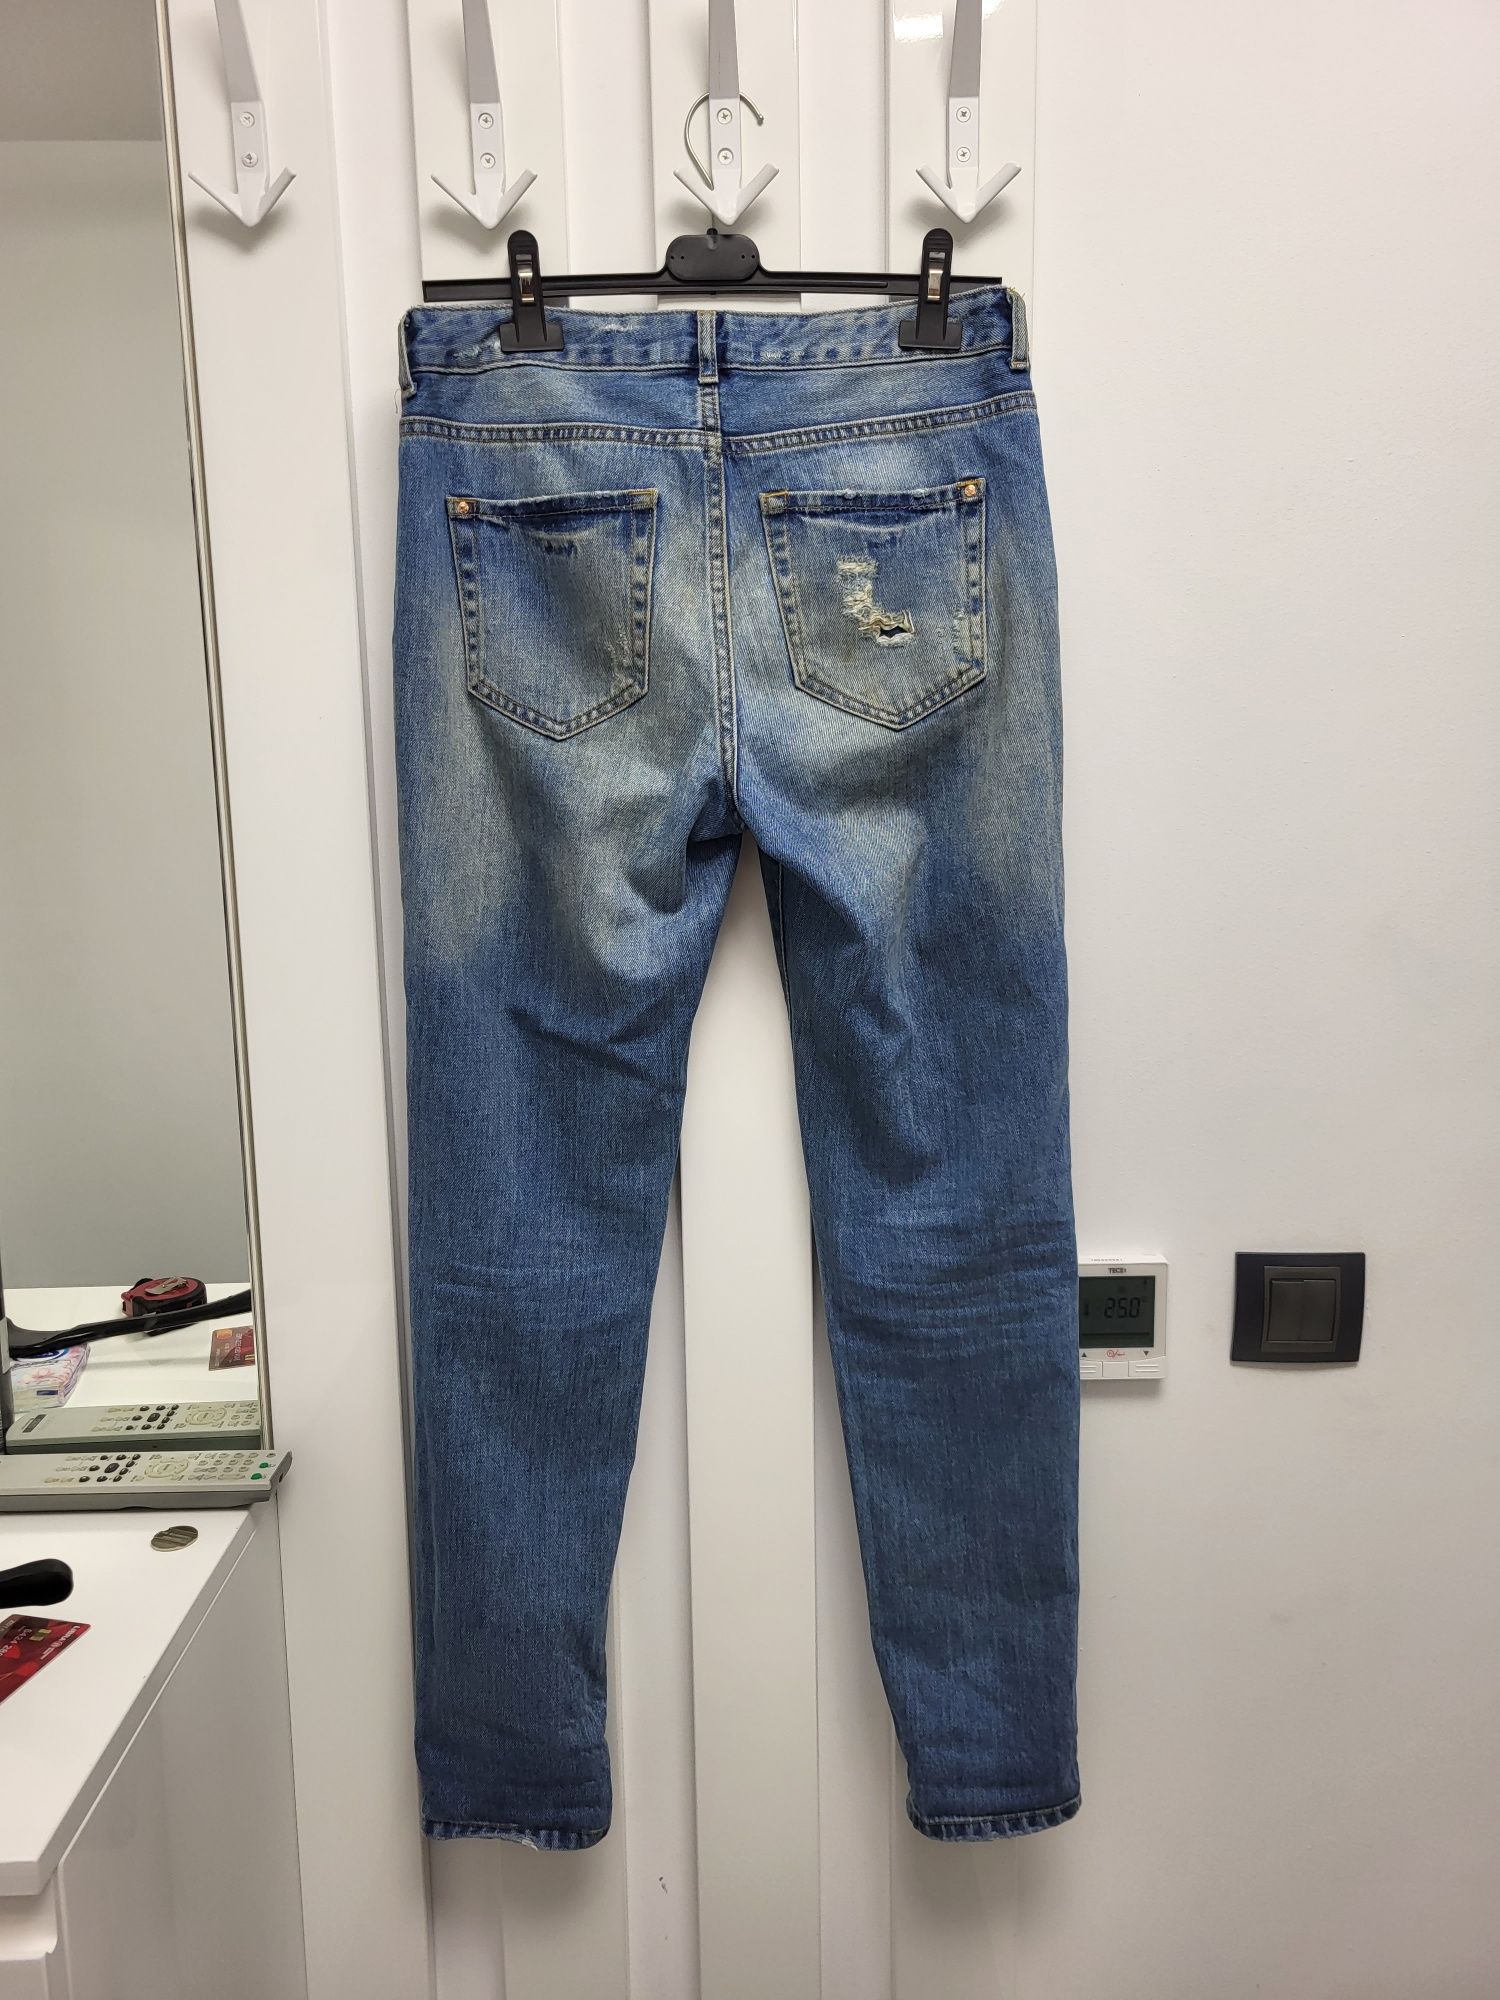 Blugi Jeans damă Boyfriend TRANSPORT GRATUIT 90% REDUCERE